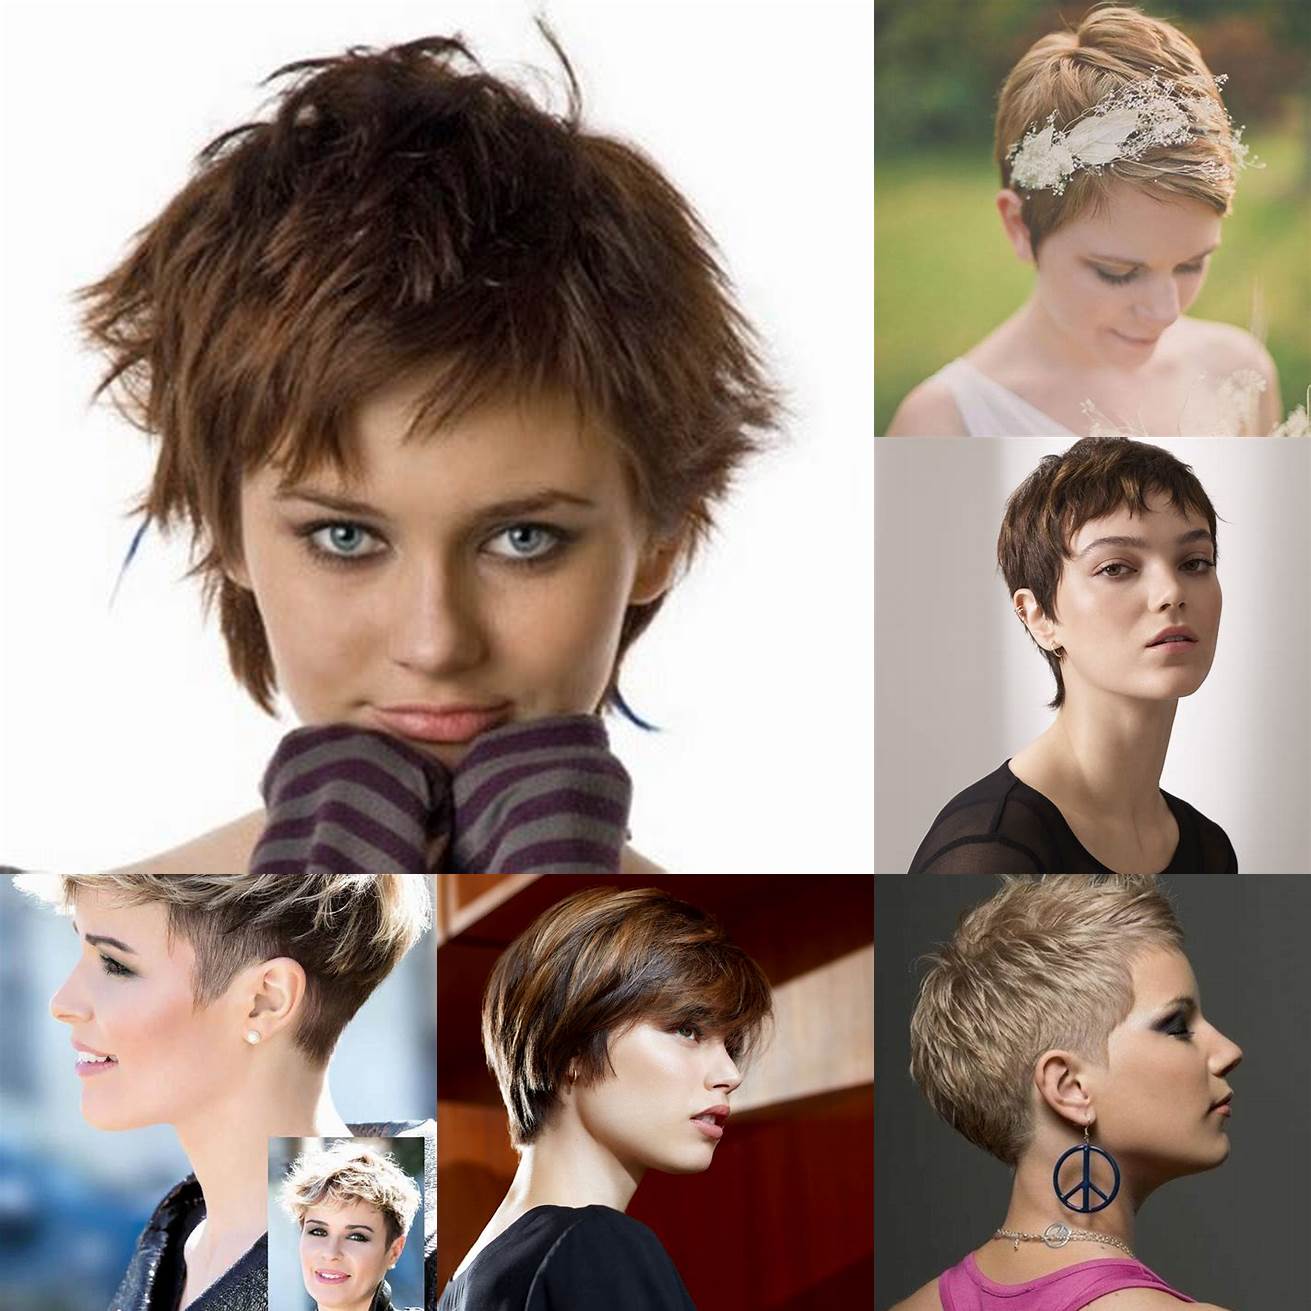 Utilisez des accessoires pour personnaliser votre coiffure courte et la rendre unique